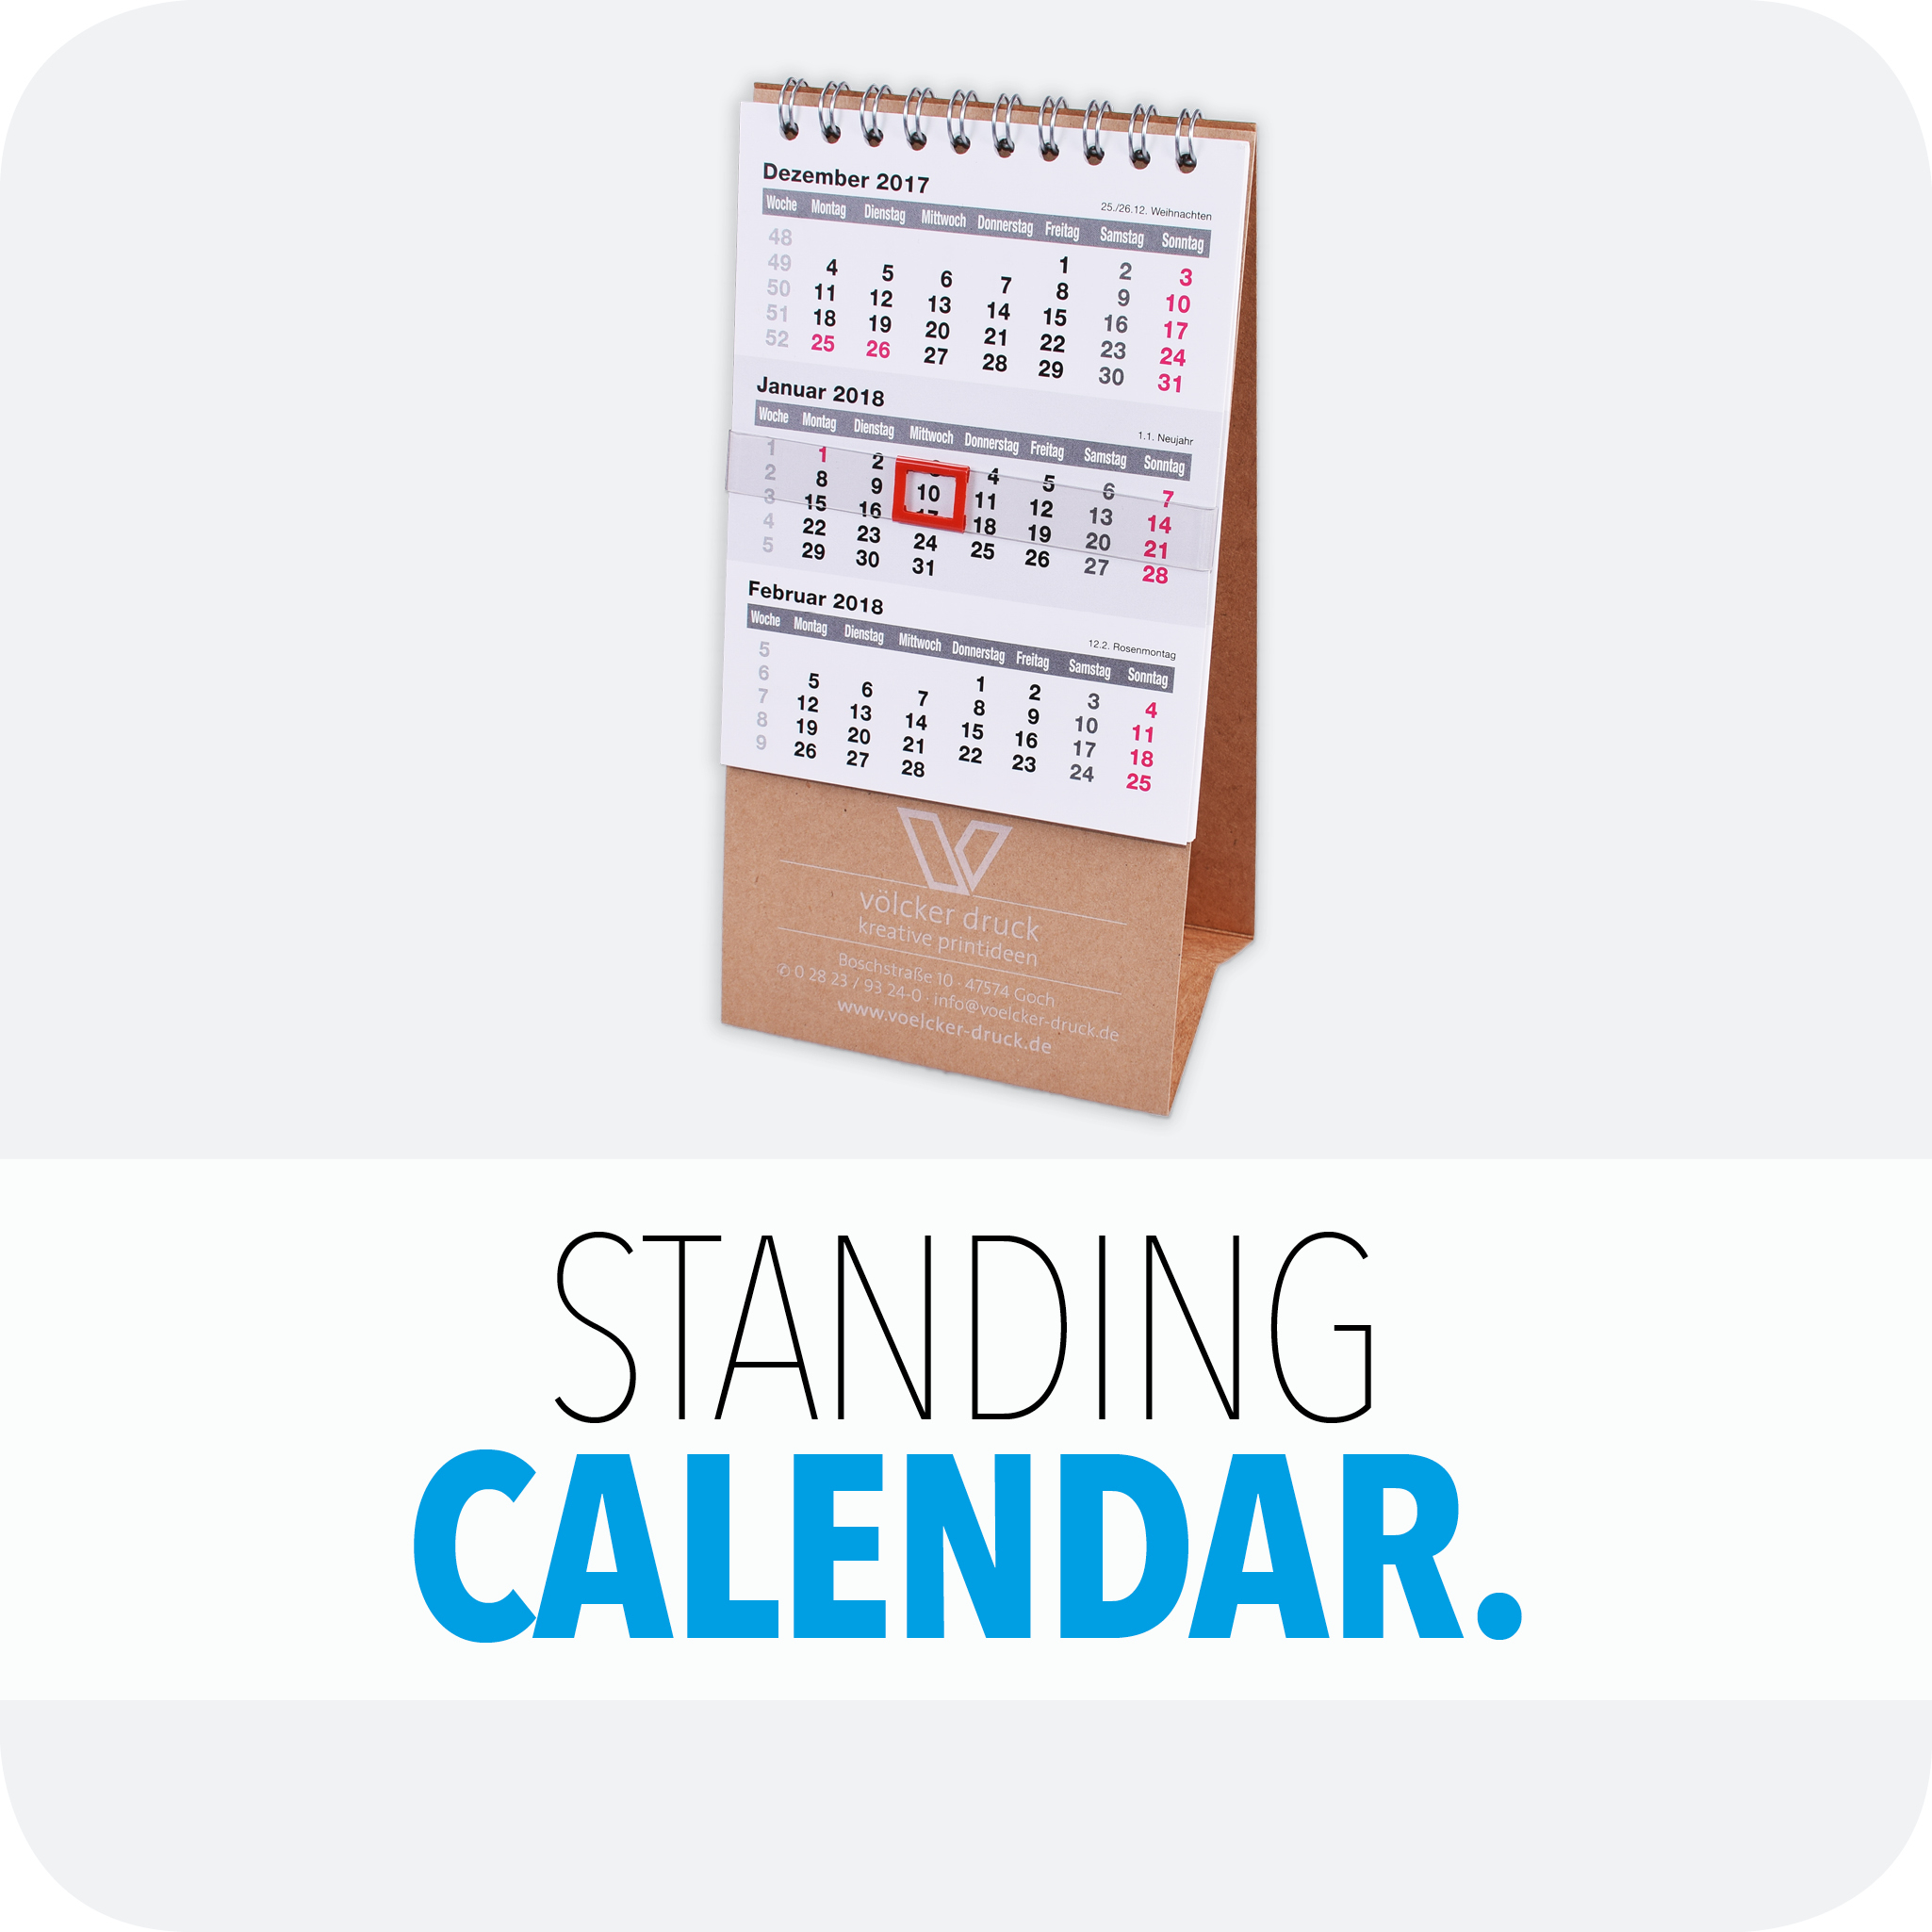 Standing calendar